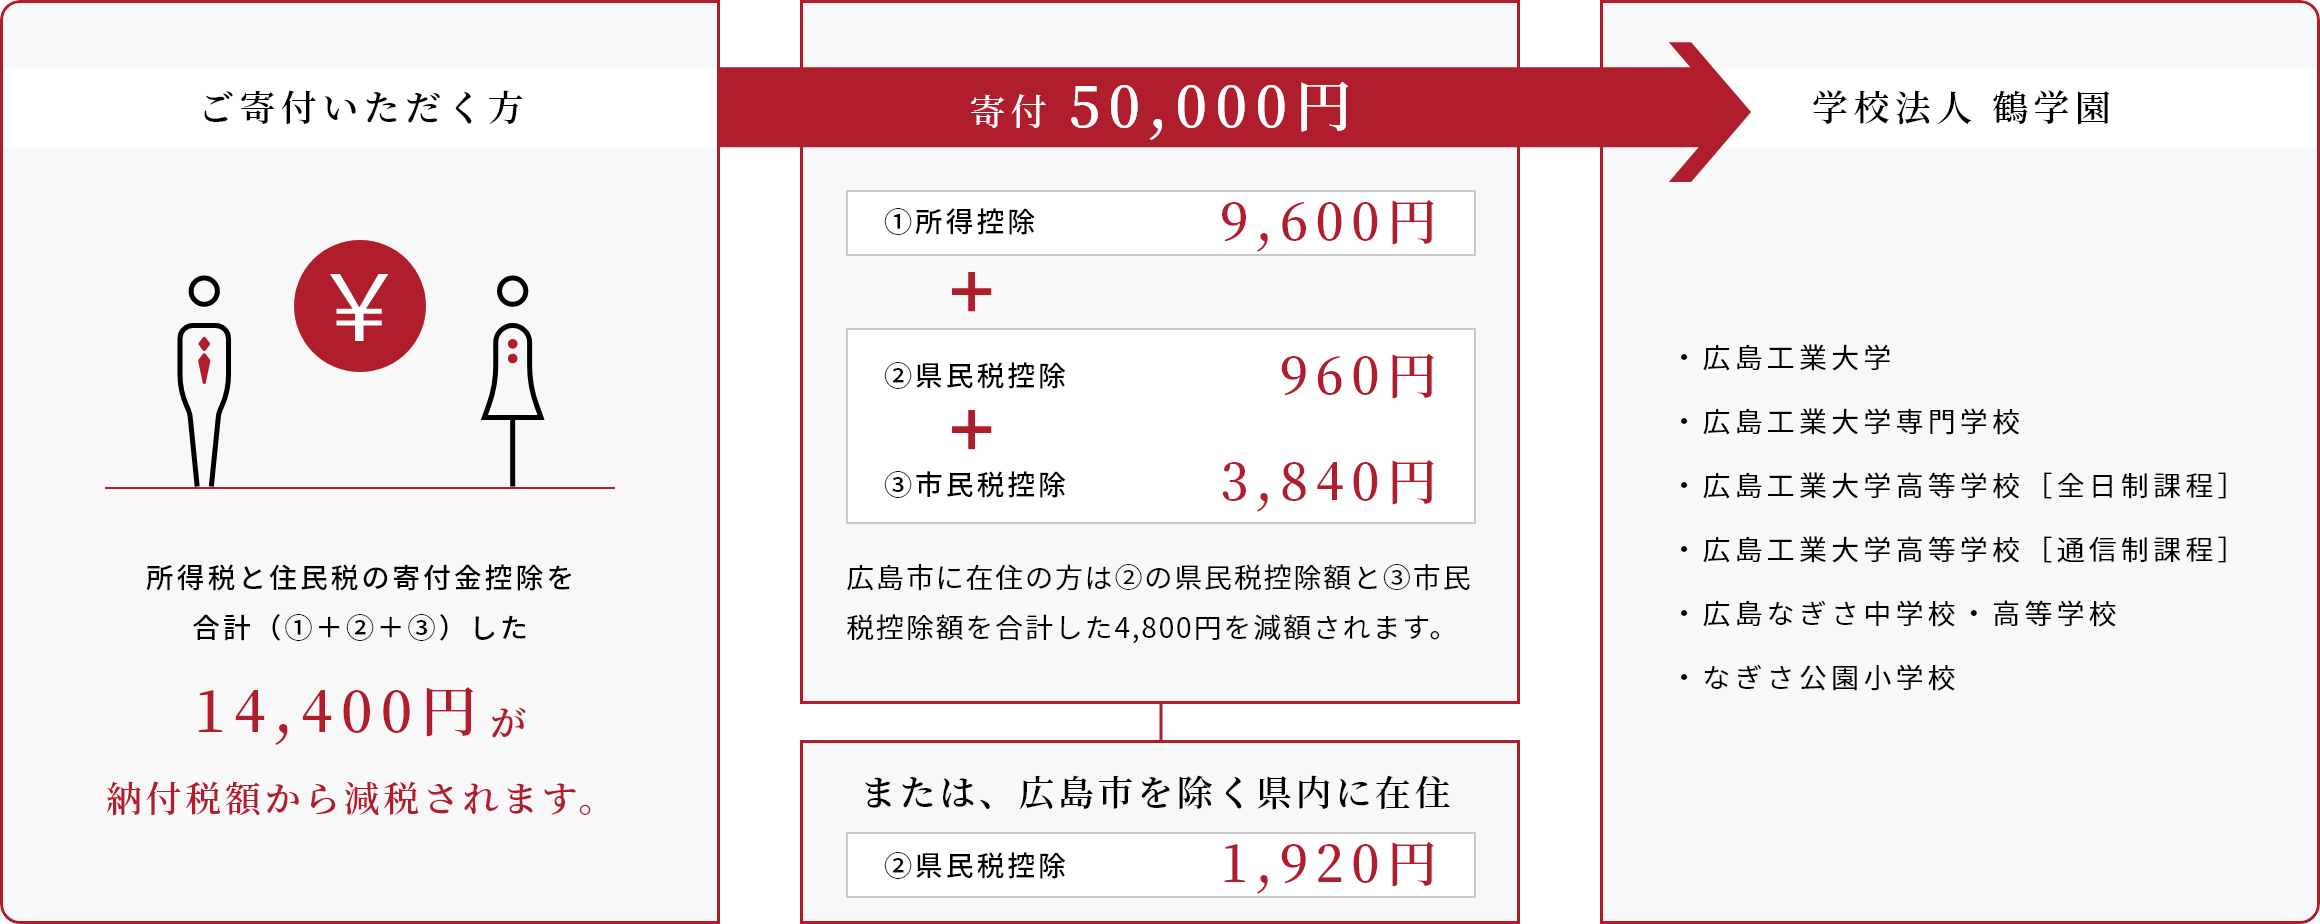 広島市在住で課税所得が500万円の方が5万円を寄付された場合